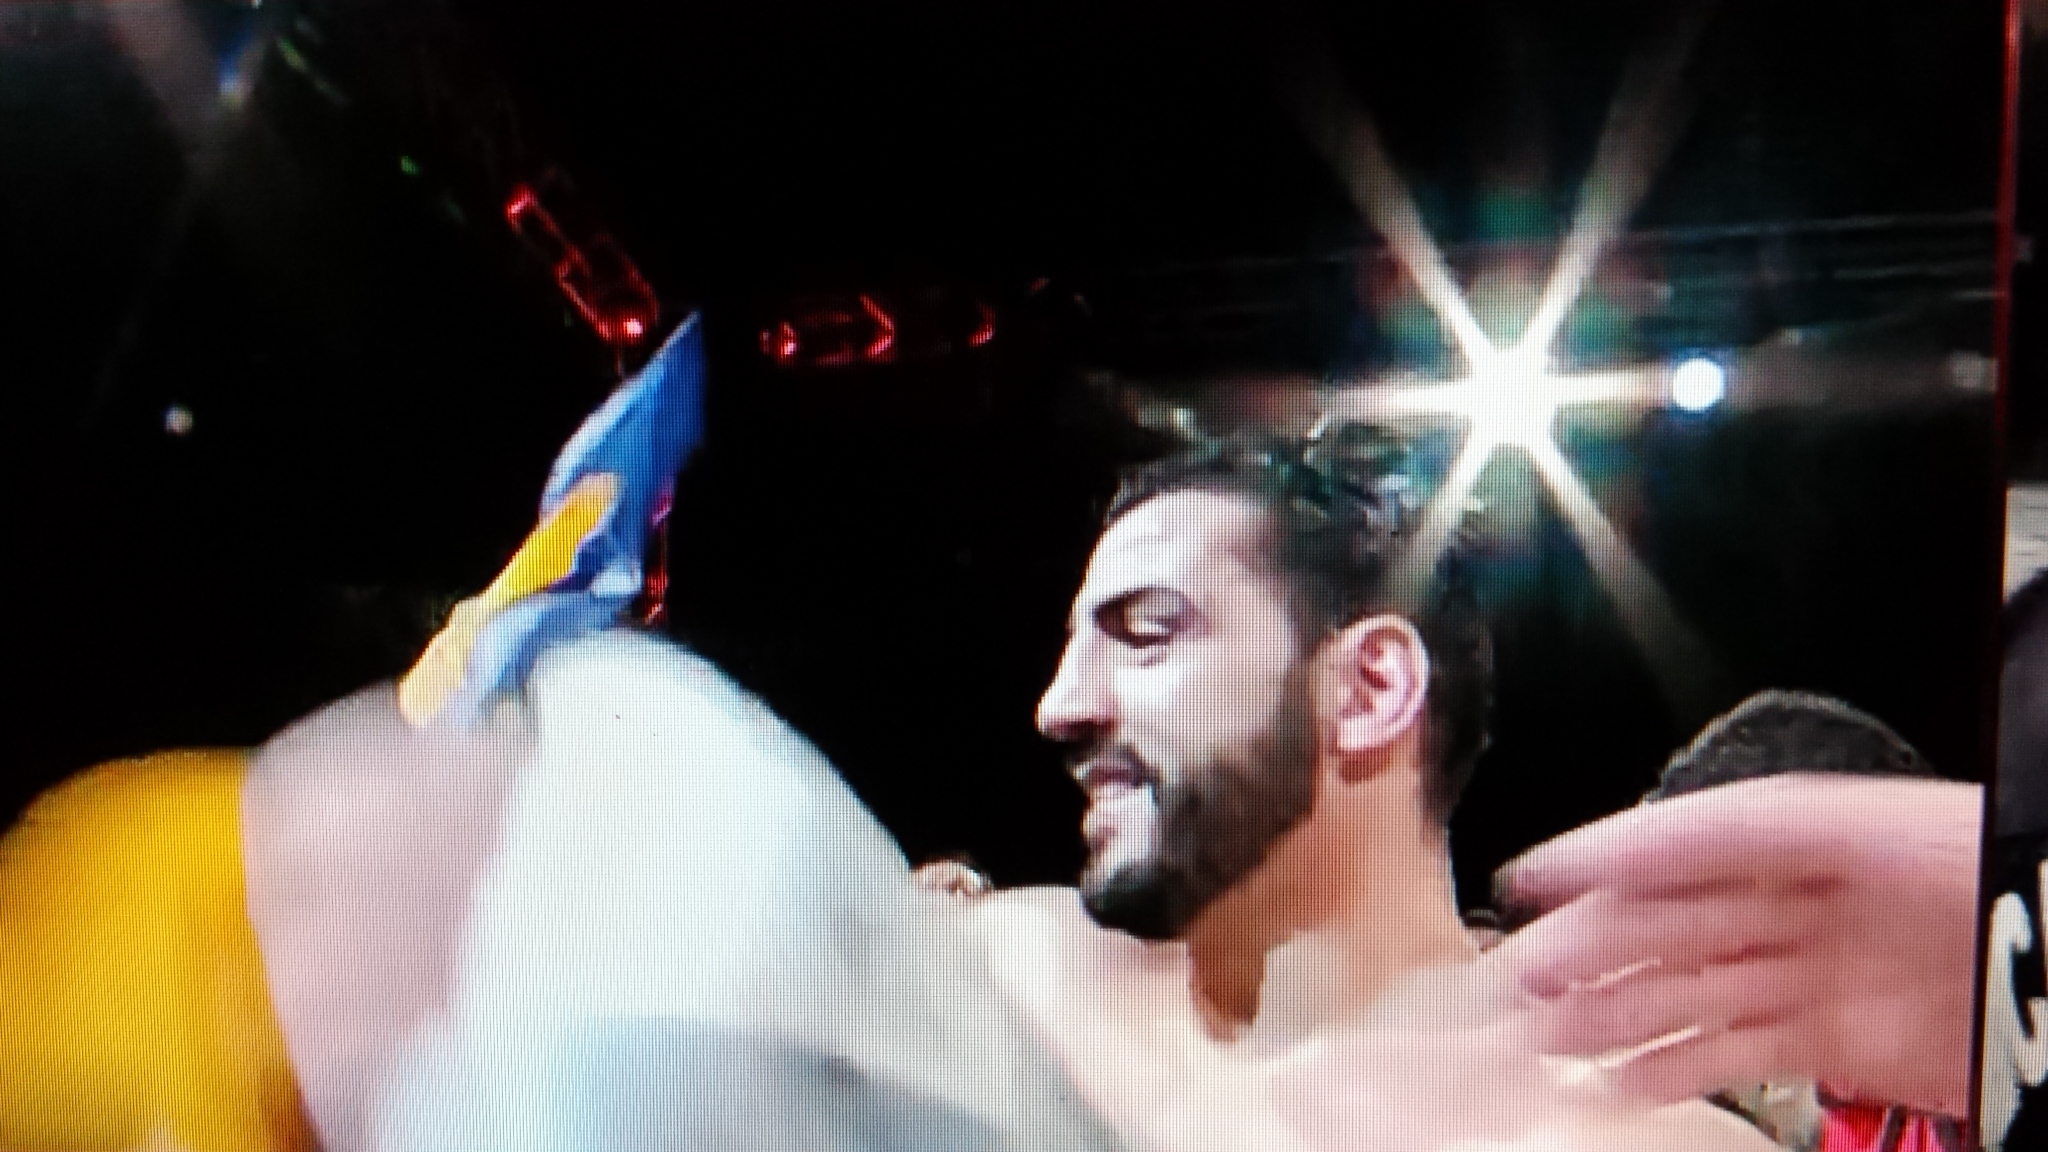 Boxe : Le kabyle Karim Achour champion de l'Union européenne